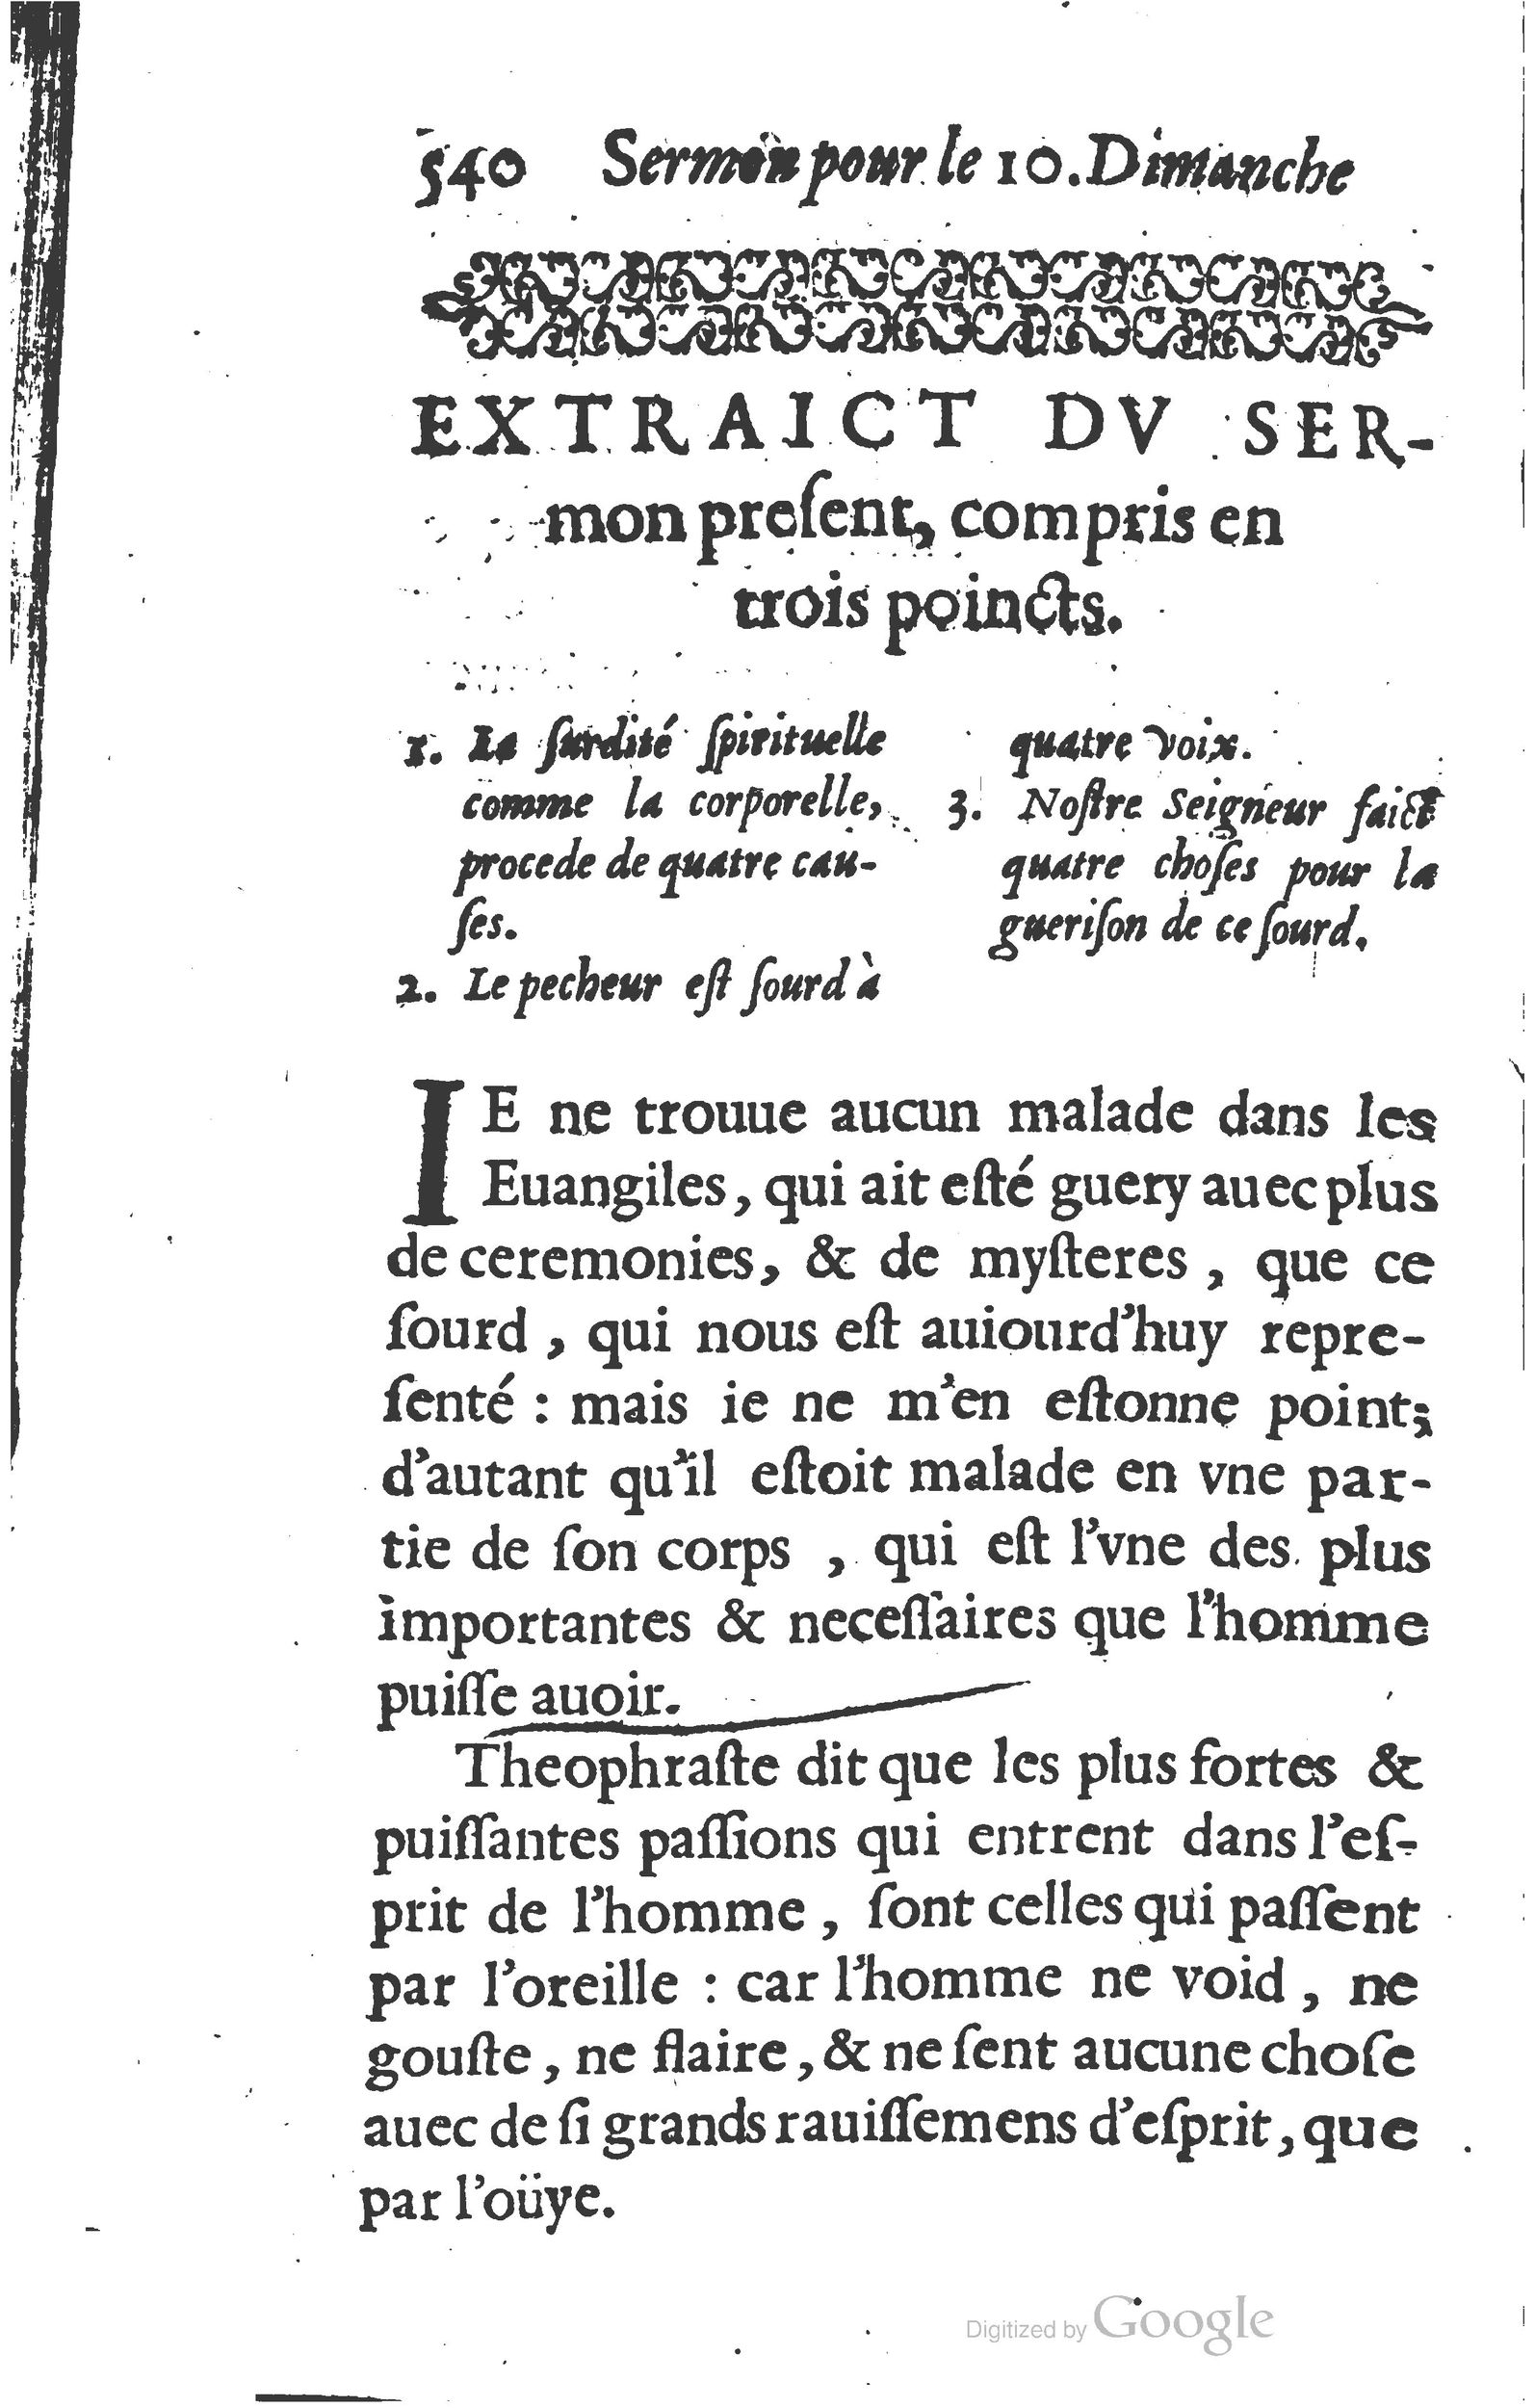 1629 Sermons ou trésor de la piété chrétienne_Page_563.jpg